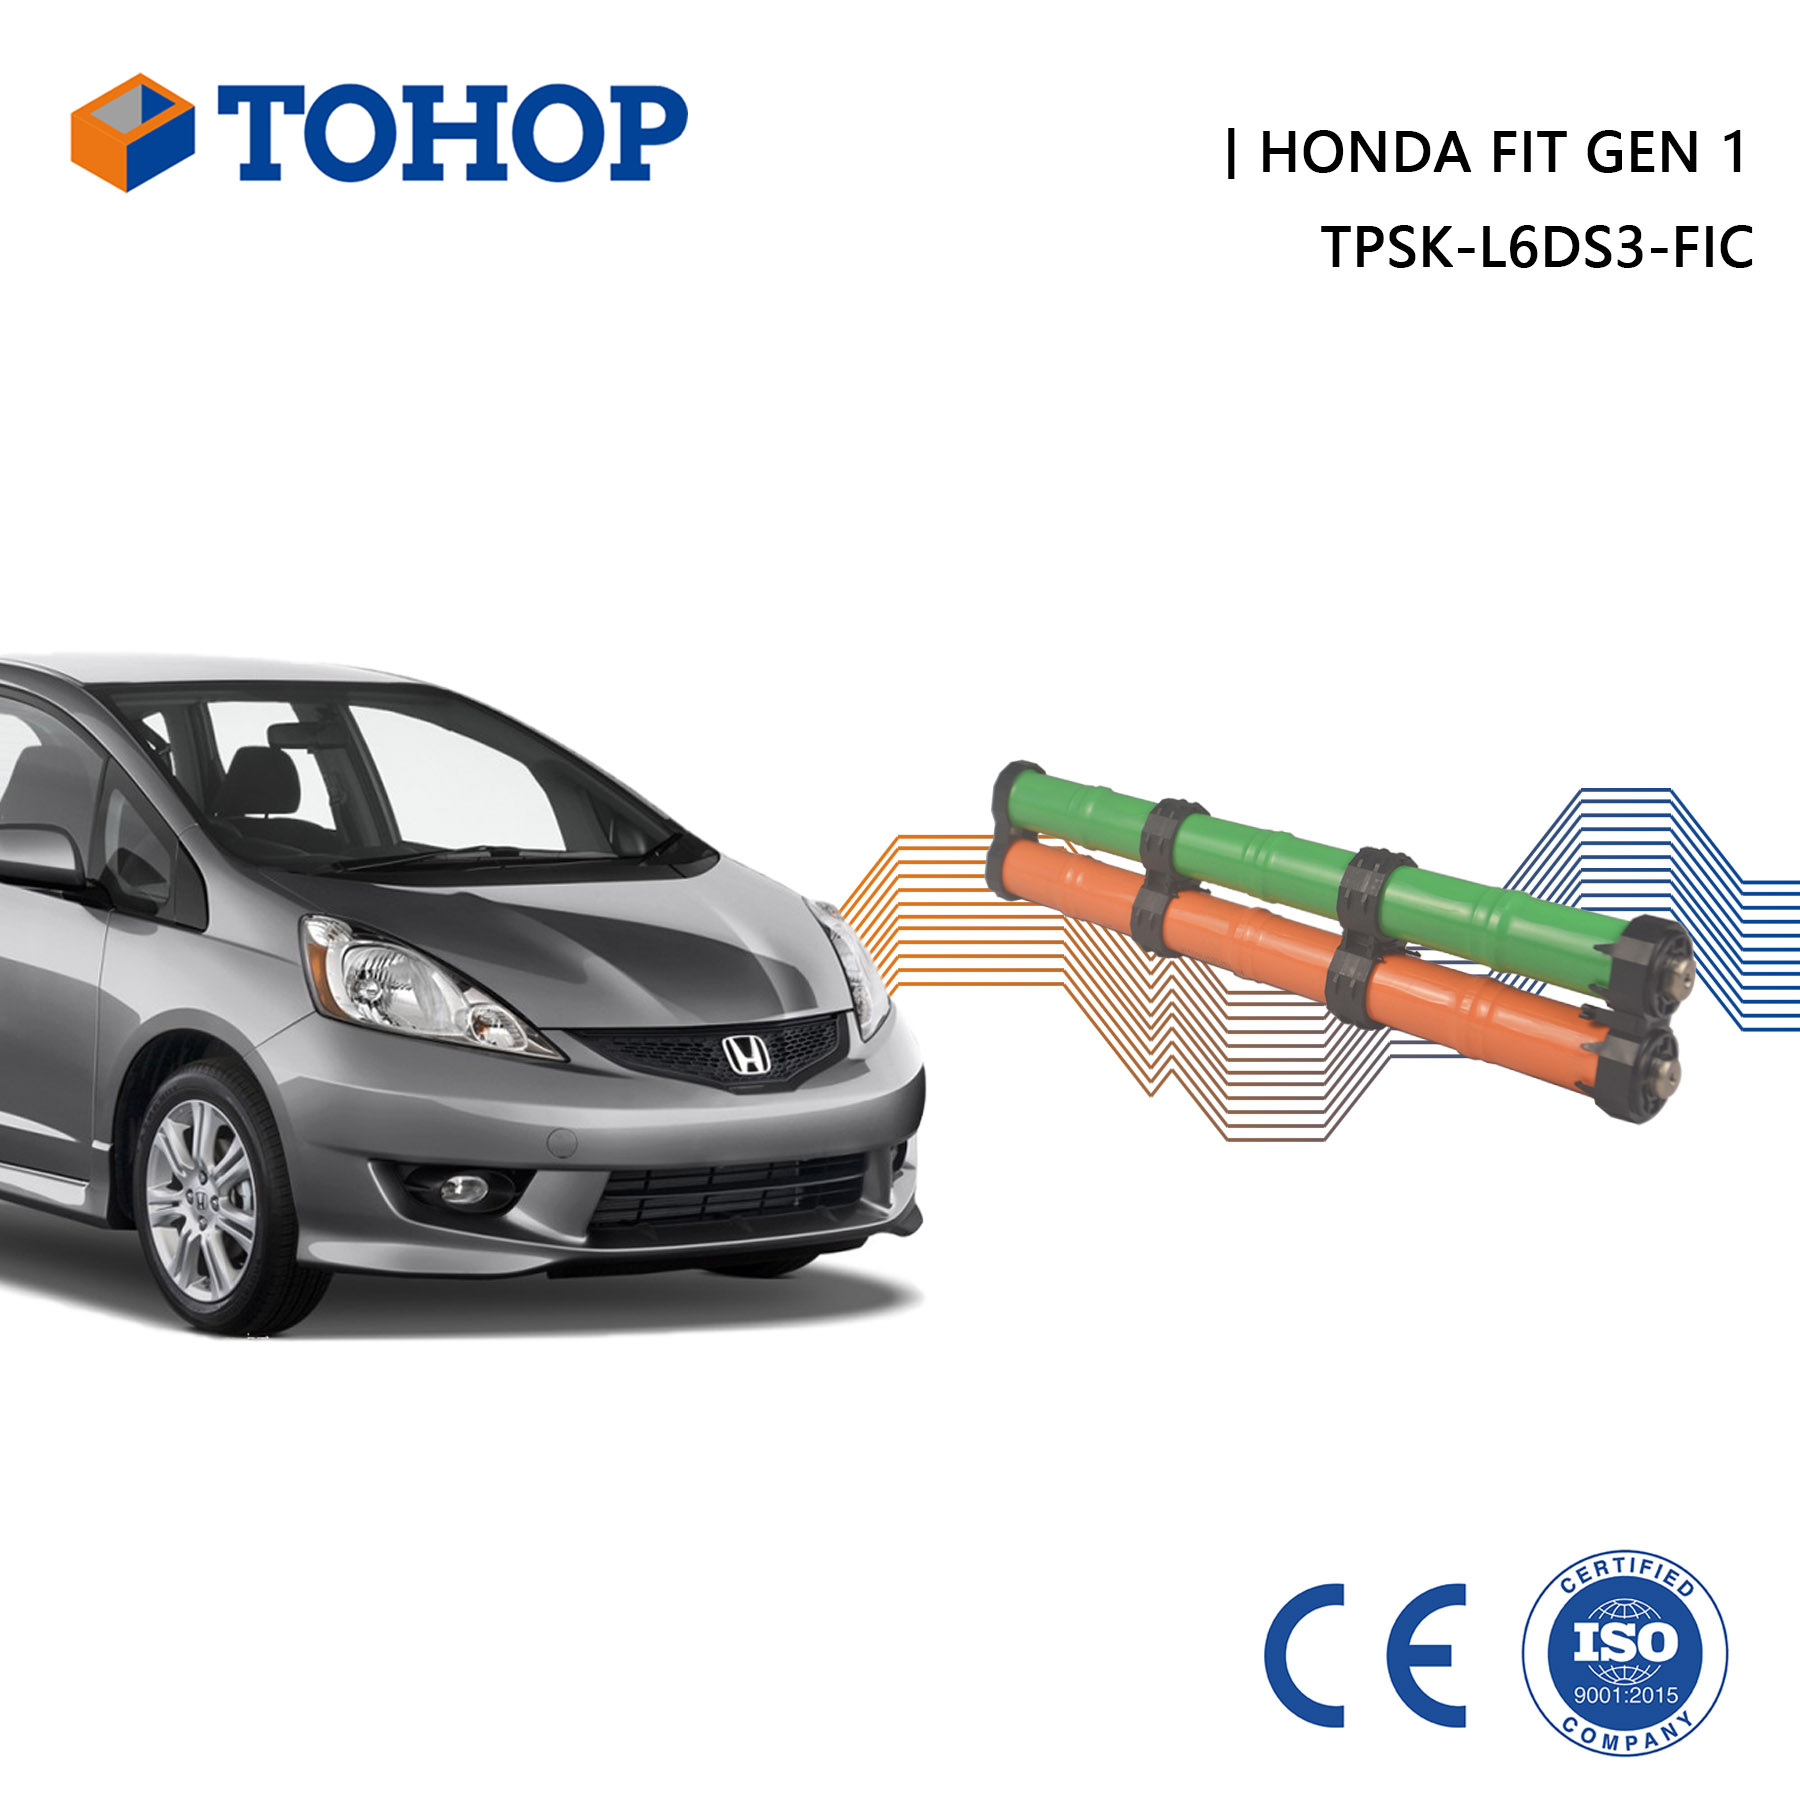 Zylindrischer Gen.1 Honda FIT Hybrid Battery Pack für Fahrzeuge